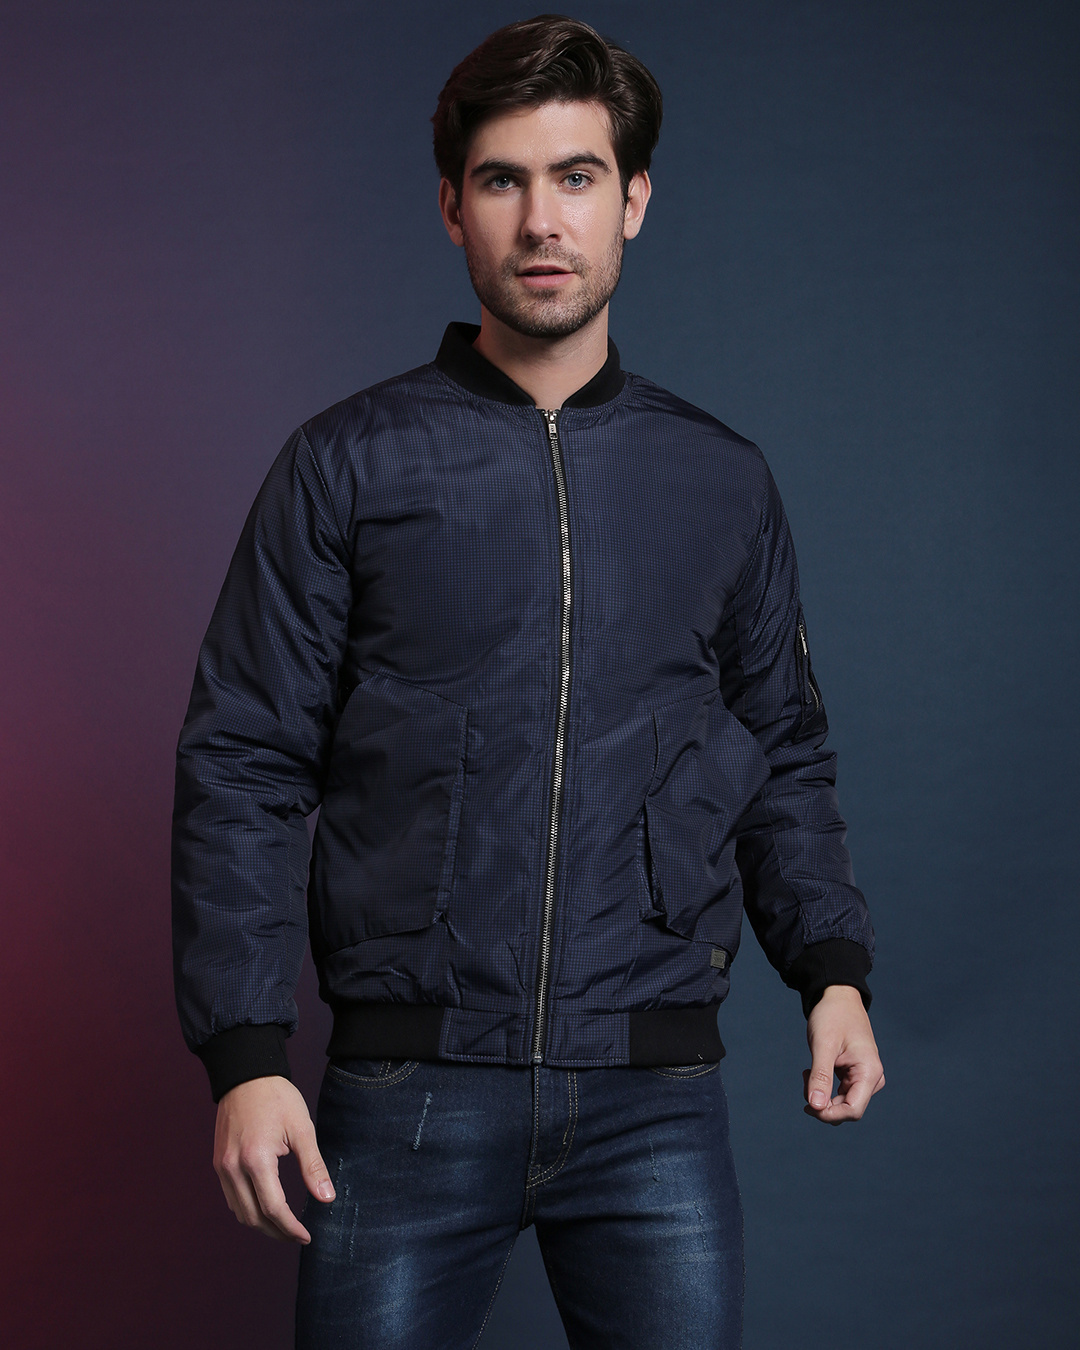 Buy Men's Blue & Black Solid Regular Fit Jacket for Men Blue Online at ...